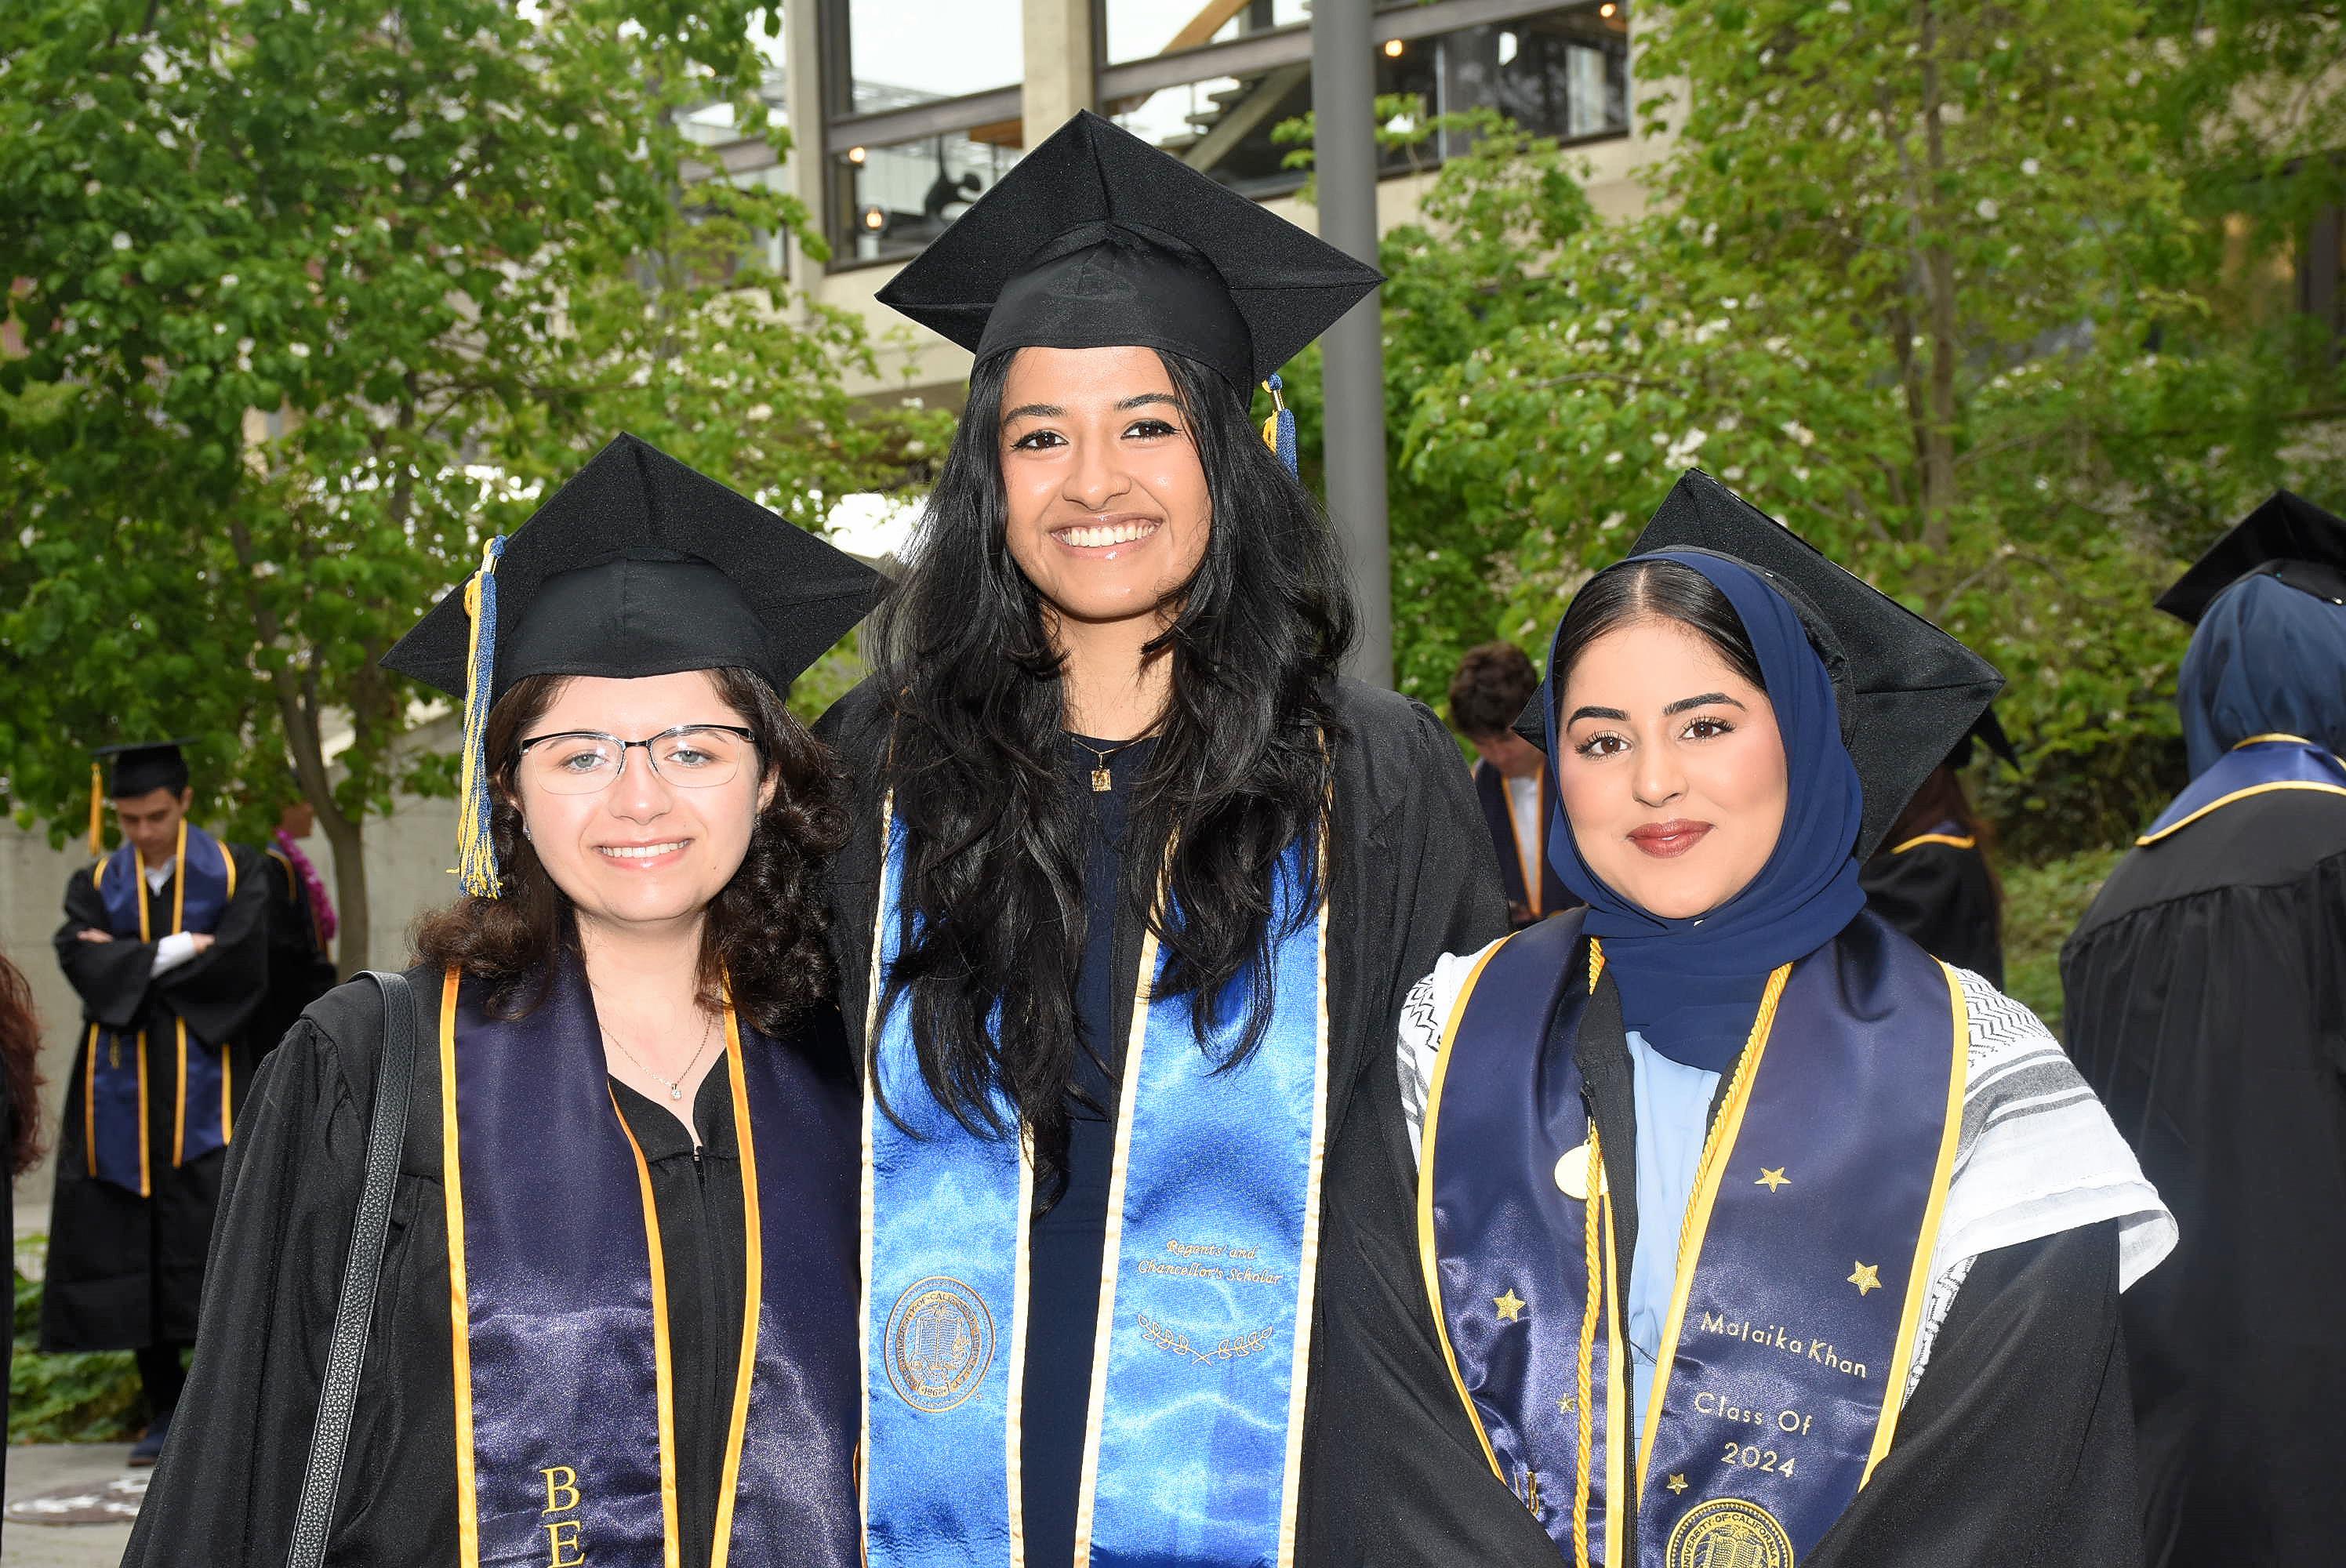 Three graduates in regalia